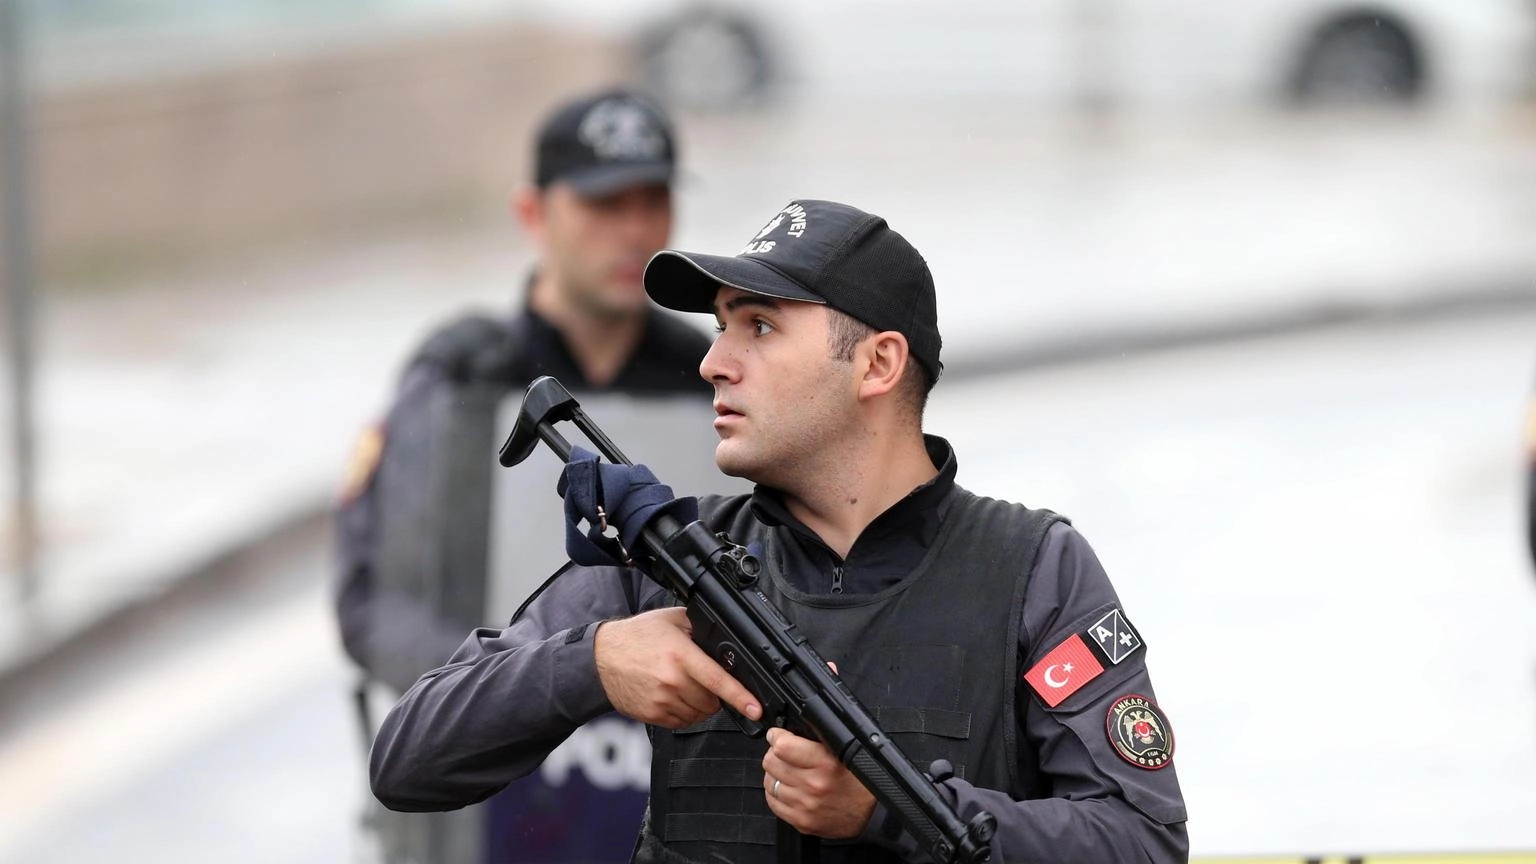 Turchia: arrestati 32 membri dell'Isis, 'pianificavano attacchi'